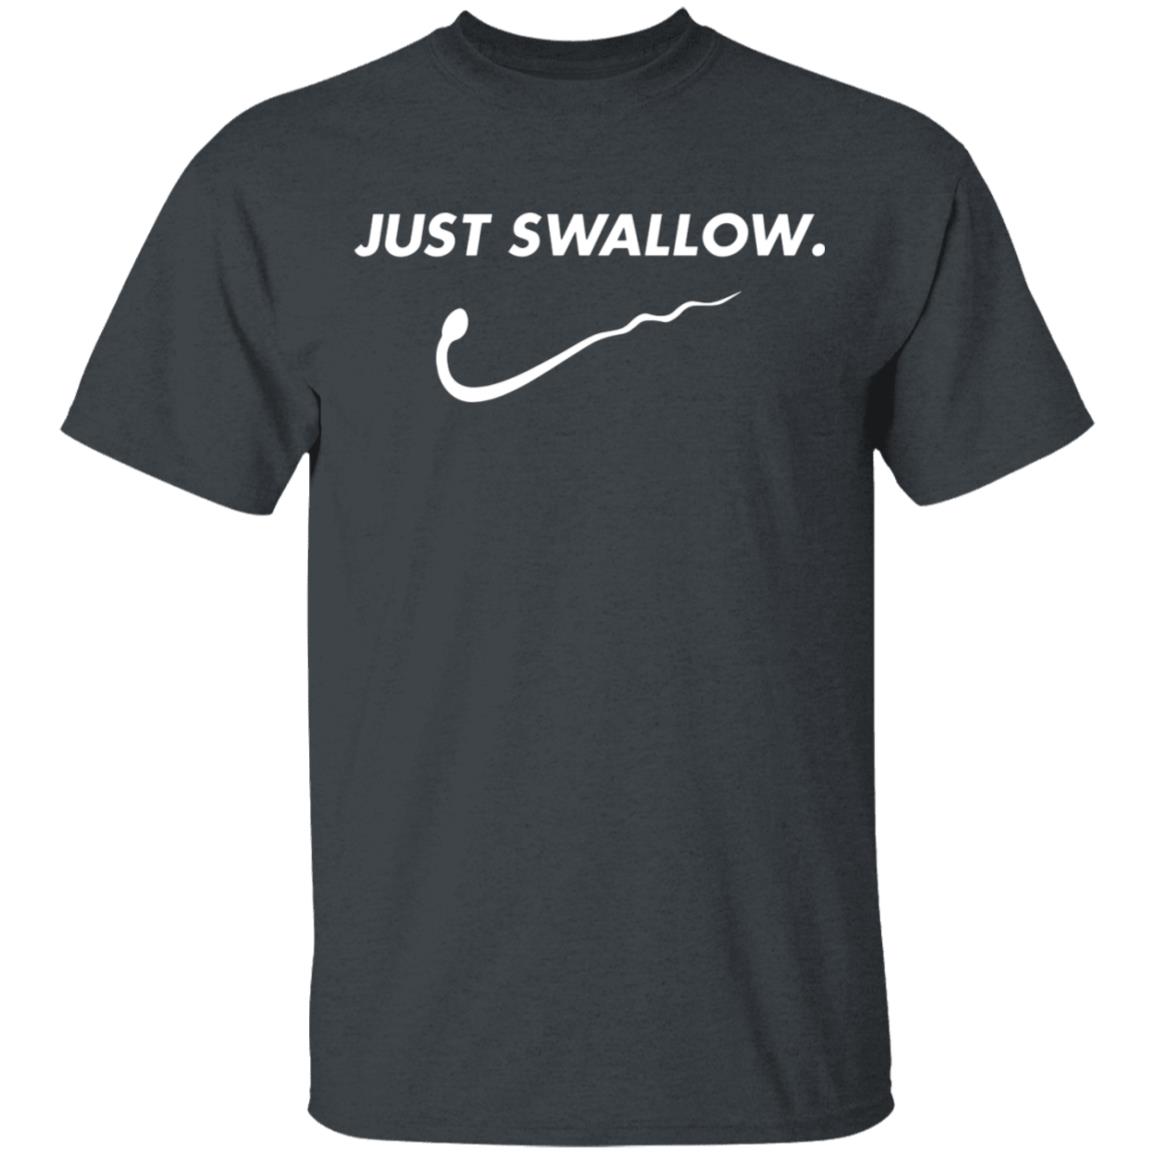 Just Swallow Shirt, Ladies Tee, Hoodie